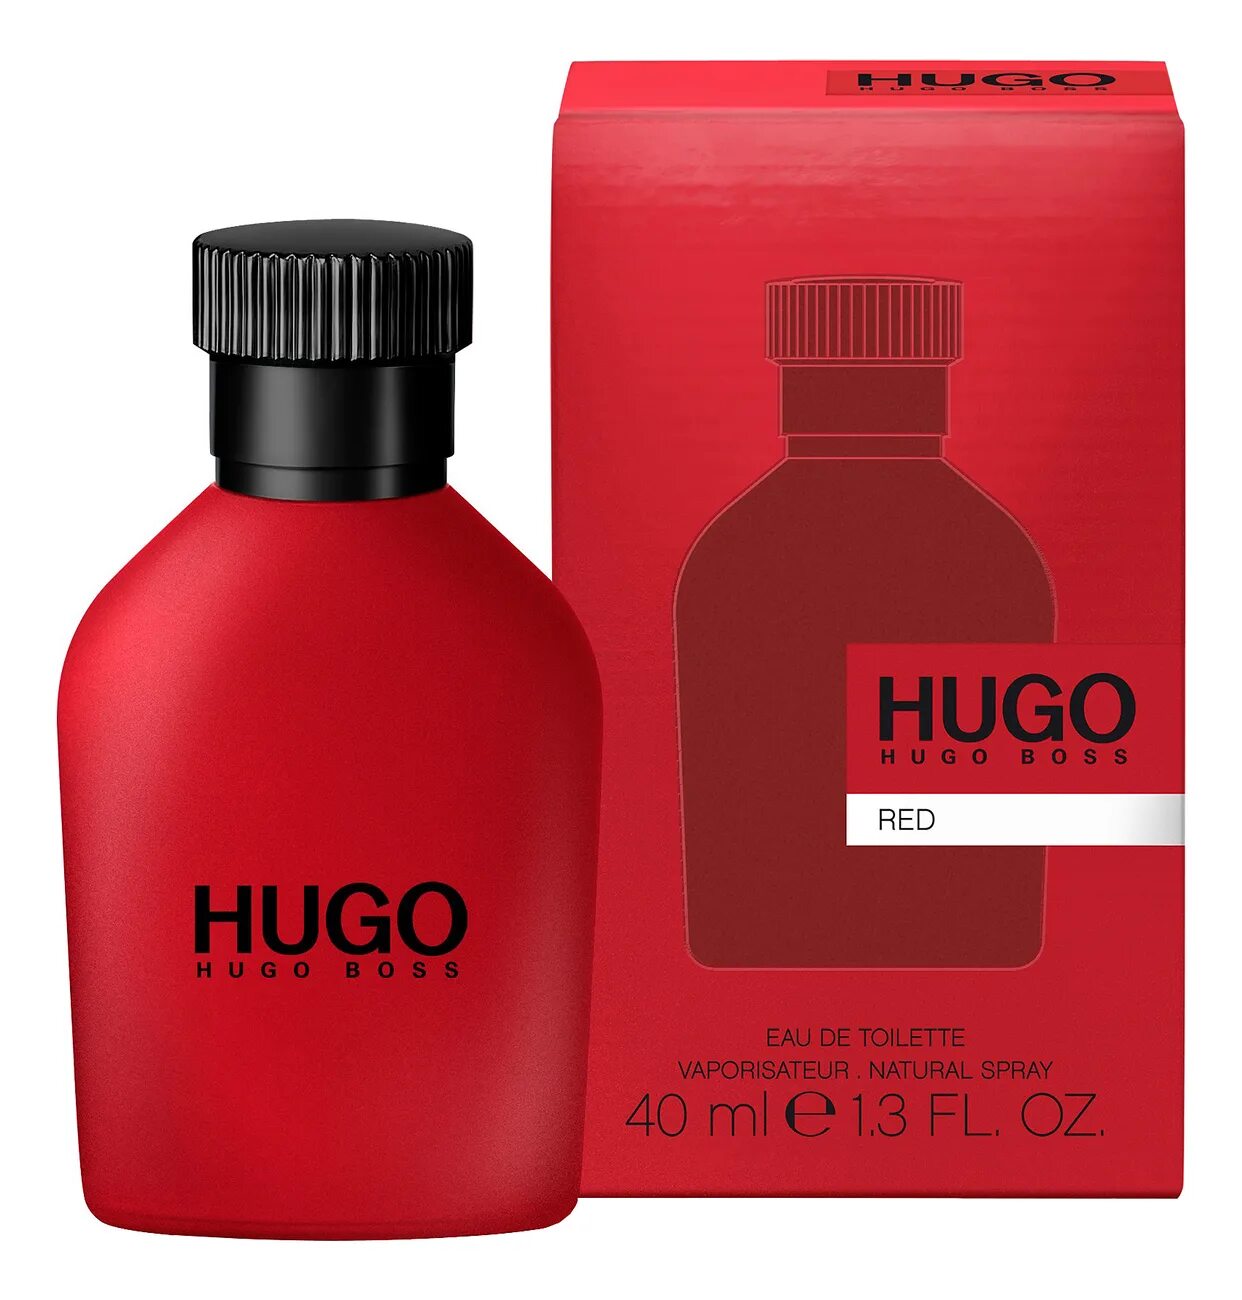 Ml hugo. Hugo Boss "Hugo Red" EDT, 100ml. Hugo Boss Red, EDT., 150 ml. Hugo Boss Red EDT Хьюго босс ред туалетная вода 150 ml. Hugo Boss мужской Hugo туалетная вода (EDT) 40мл.